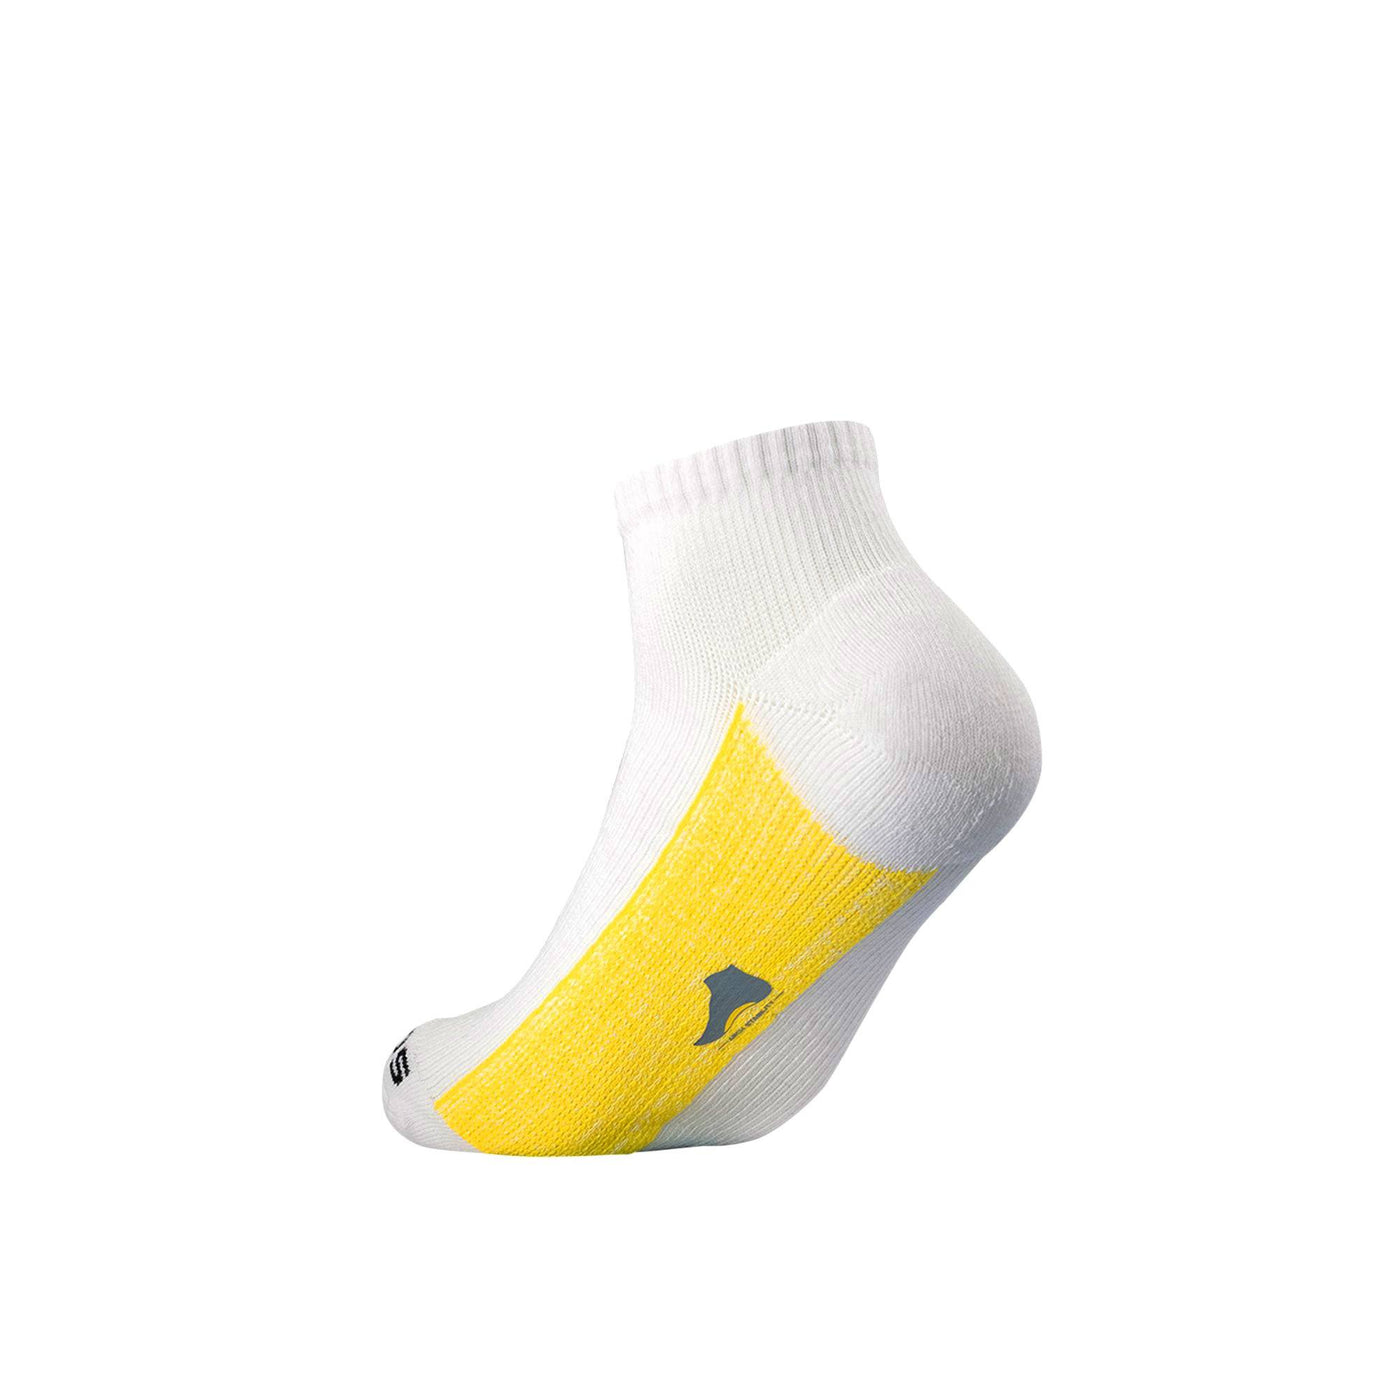 White Athletic Quarter Sock athletic socks ArchTek